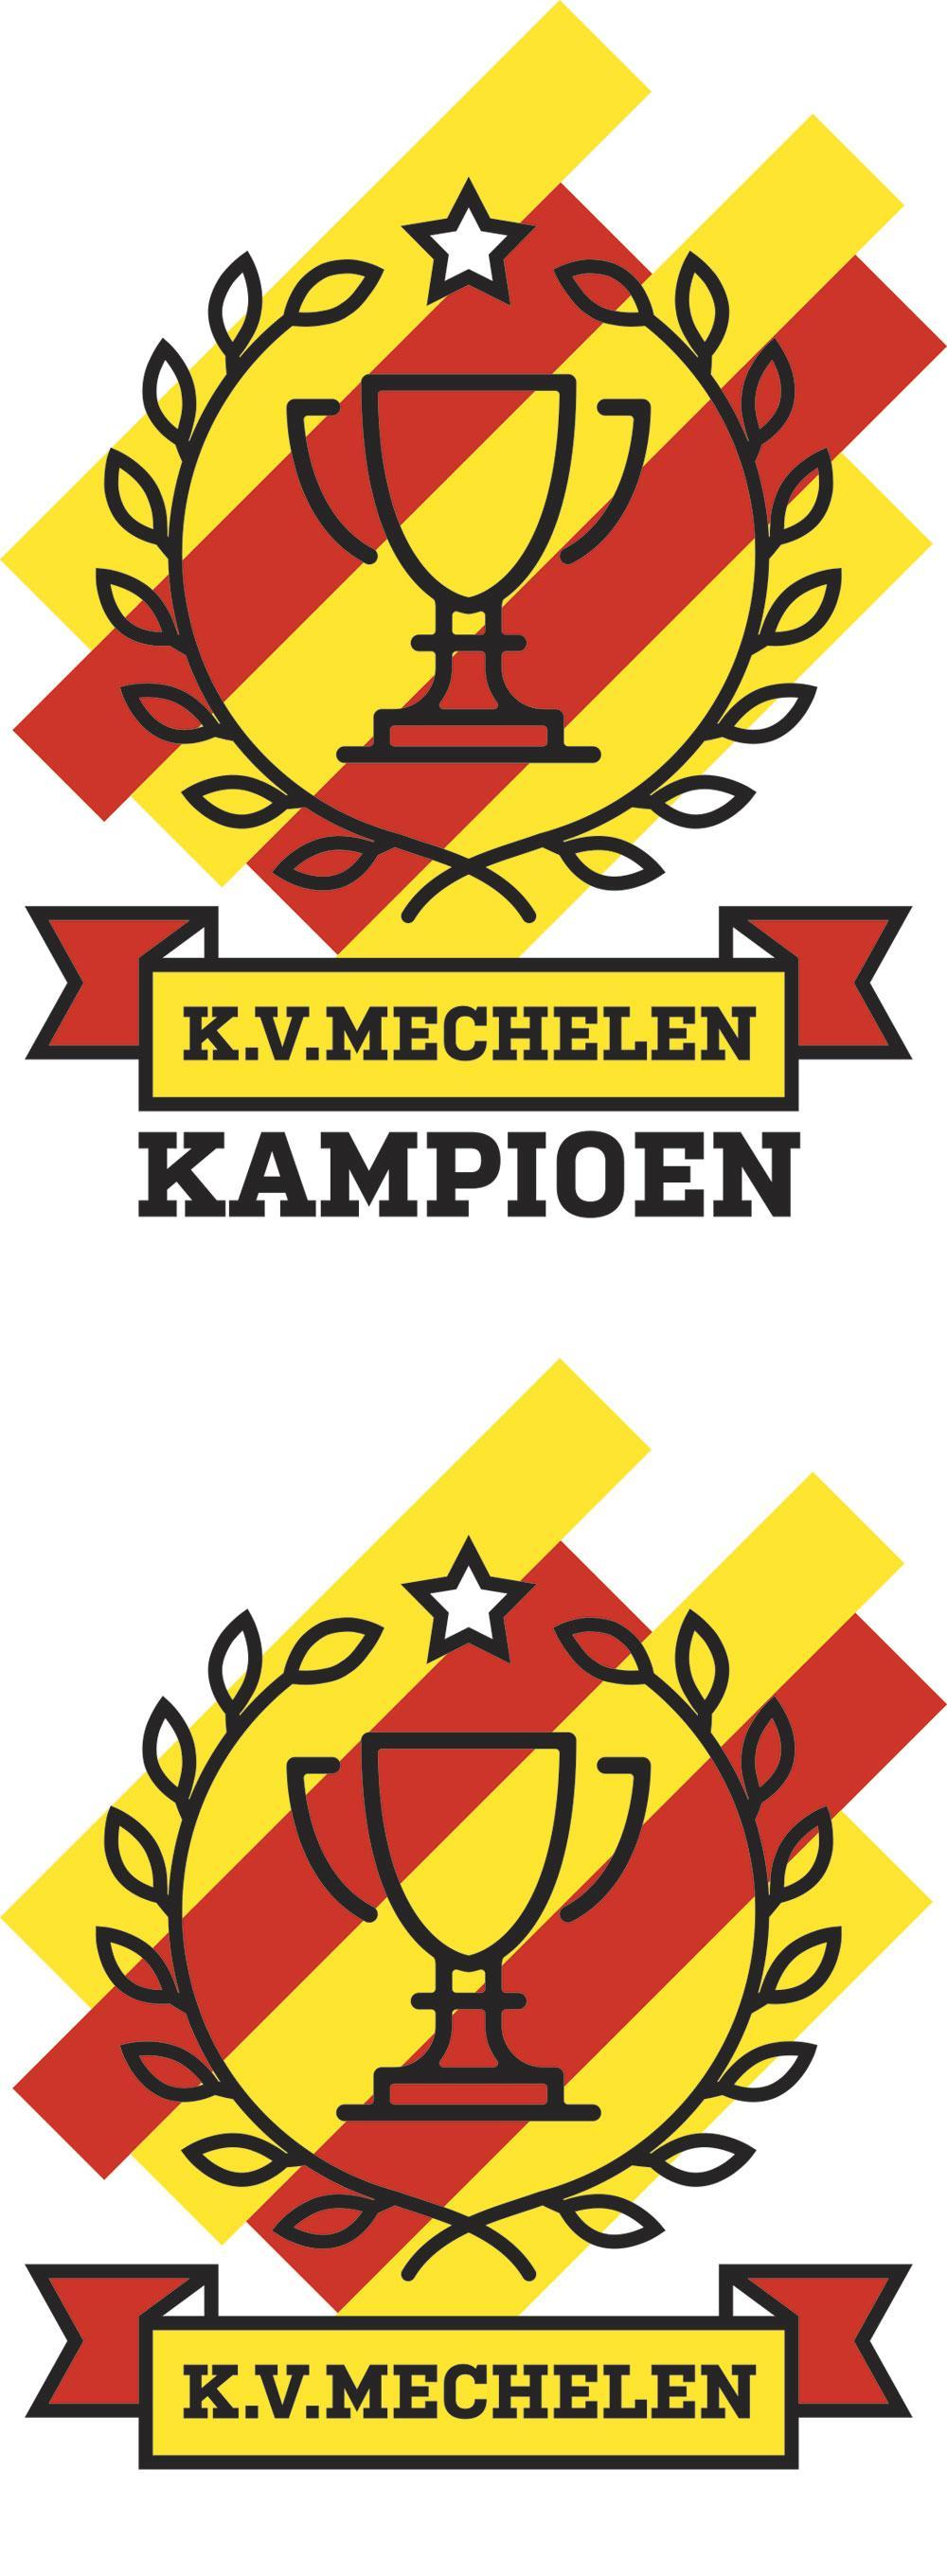 KV Mechelen kampioen: 'Alles wat tégen ons is gebeurd, heeft ons sterker gemaakt'